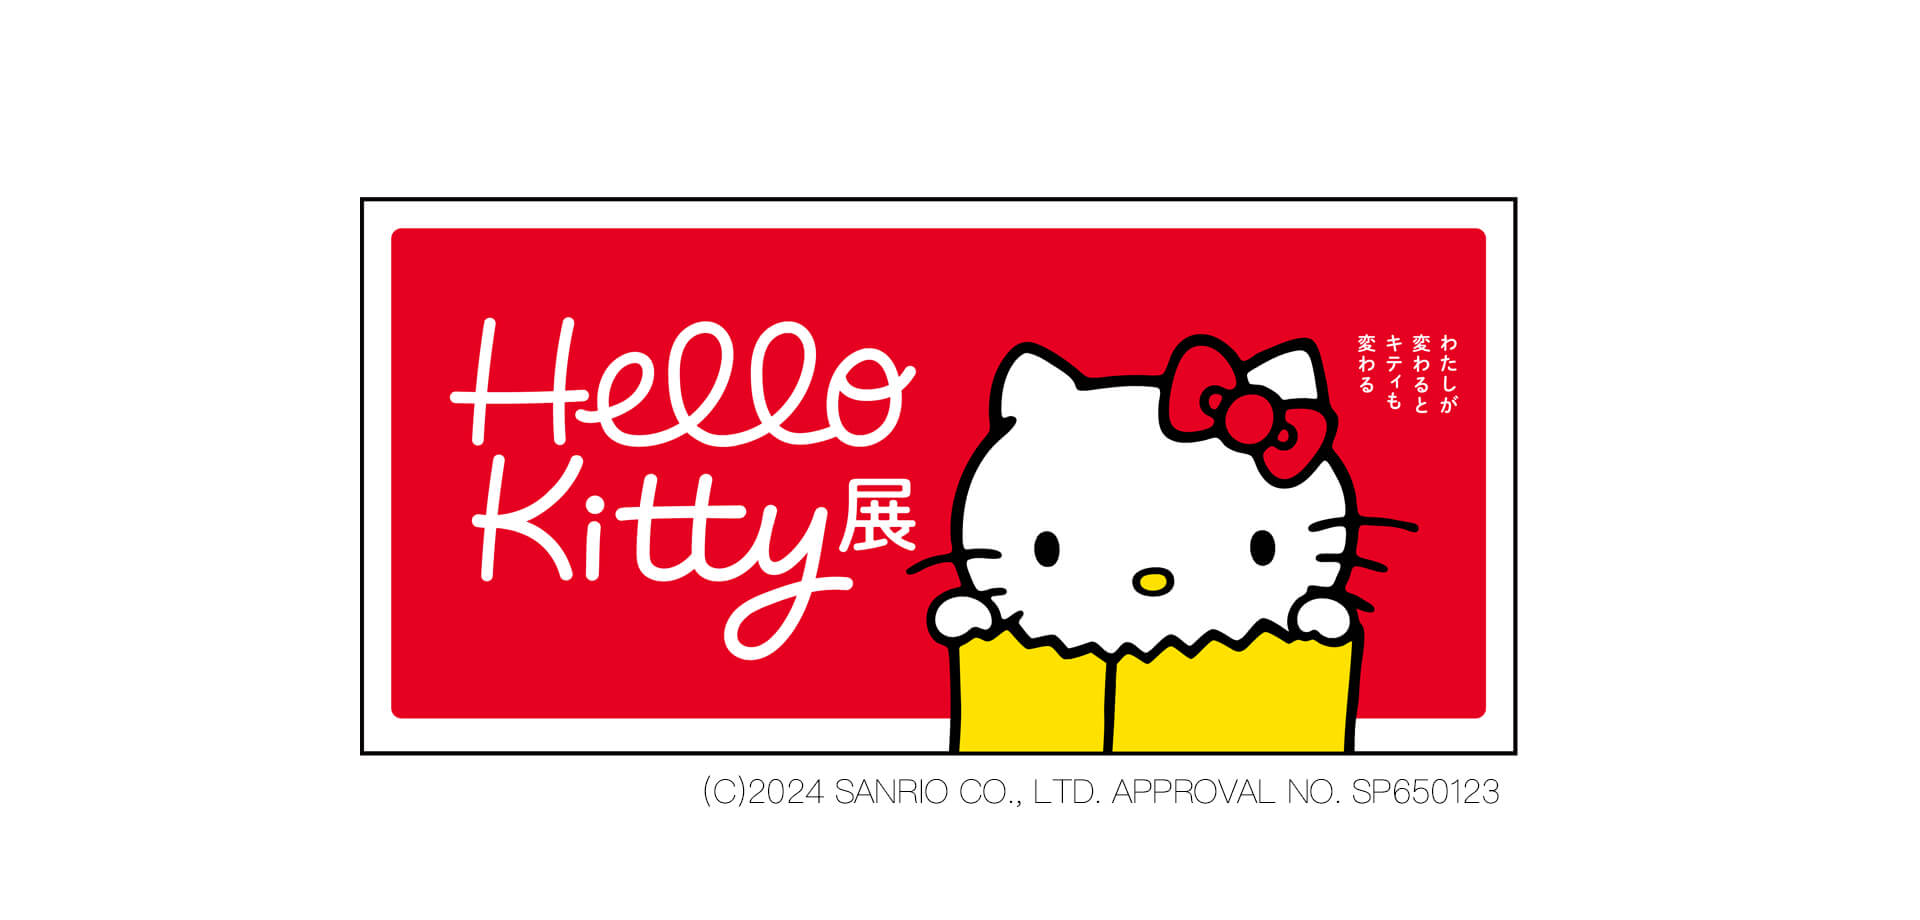 展覧会「Hello Kitty展 -わたしが変わるとキティも変わる-」 バナー